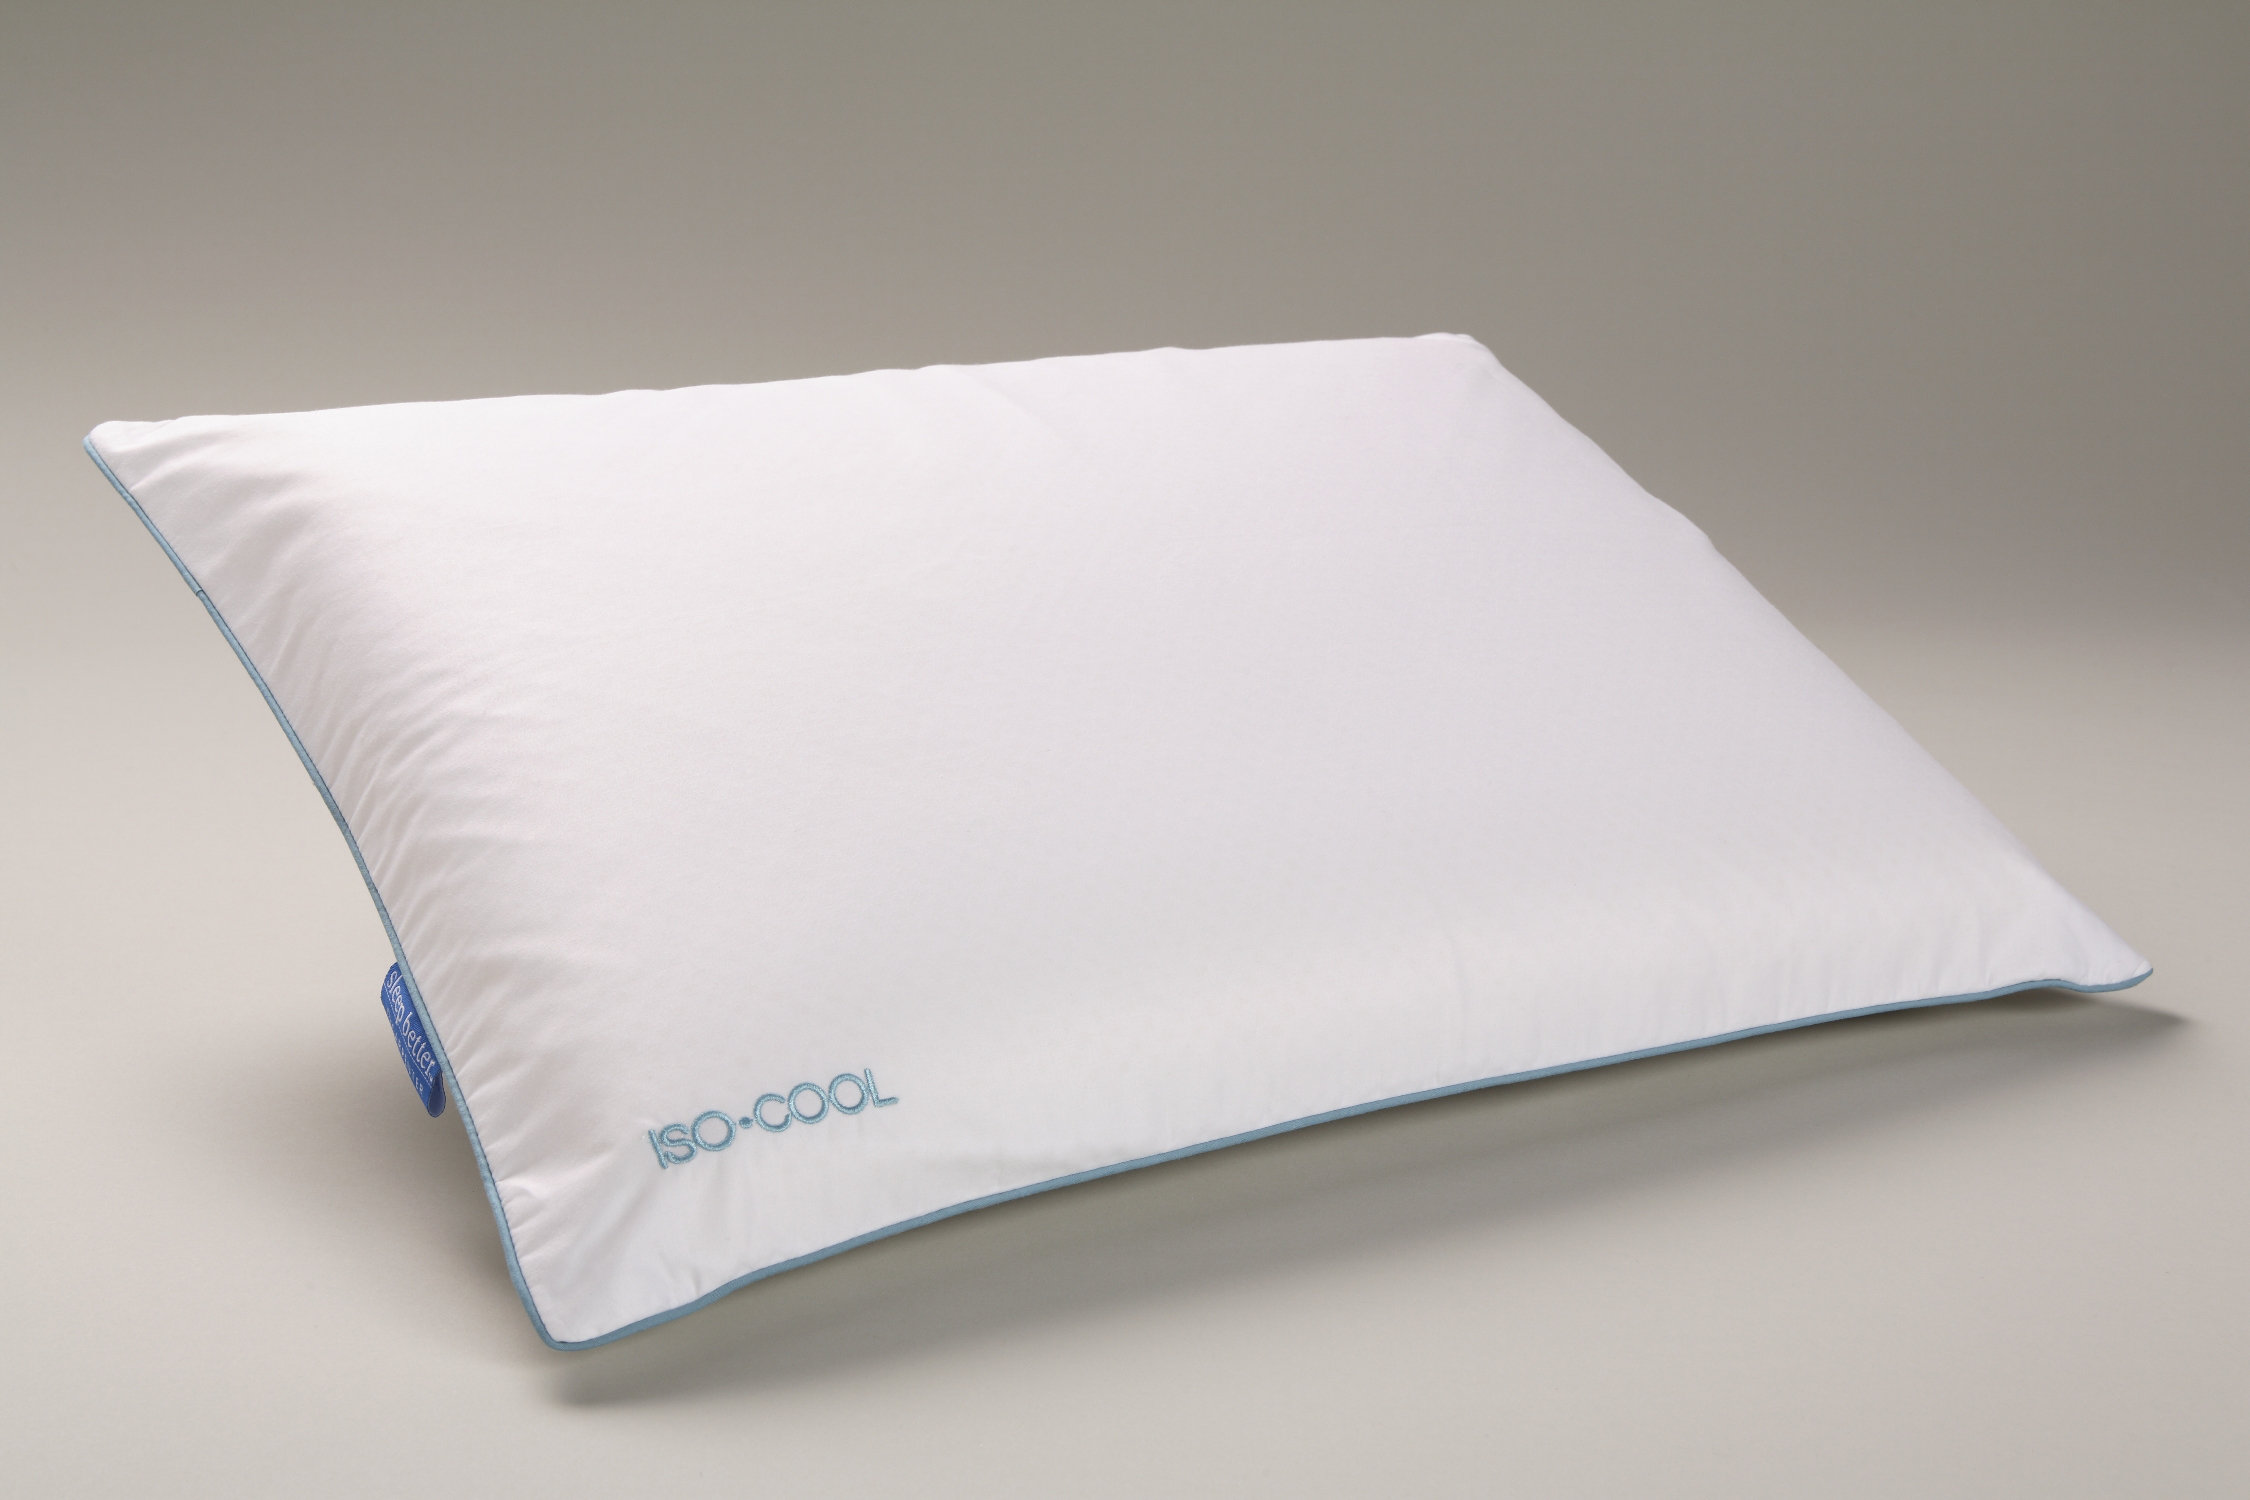 Alwyn Home Emme Medium Polyfill Pillows 4 Pack & Reviews